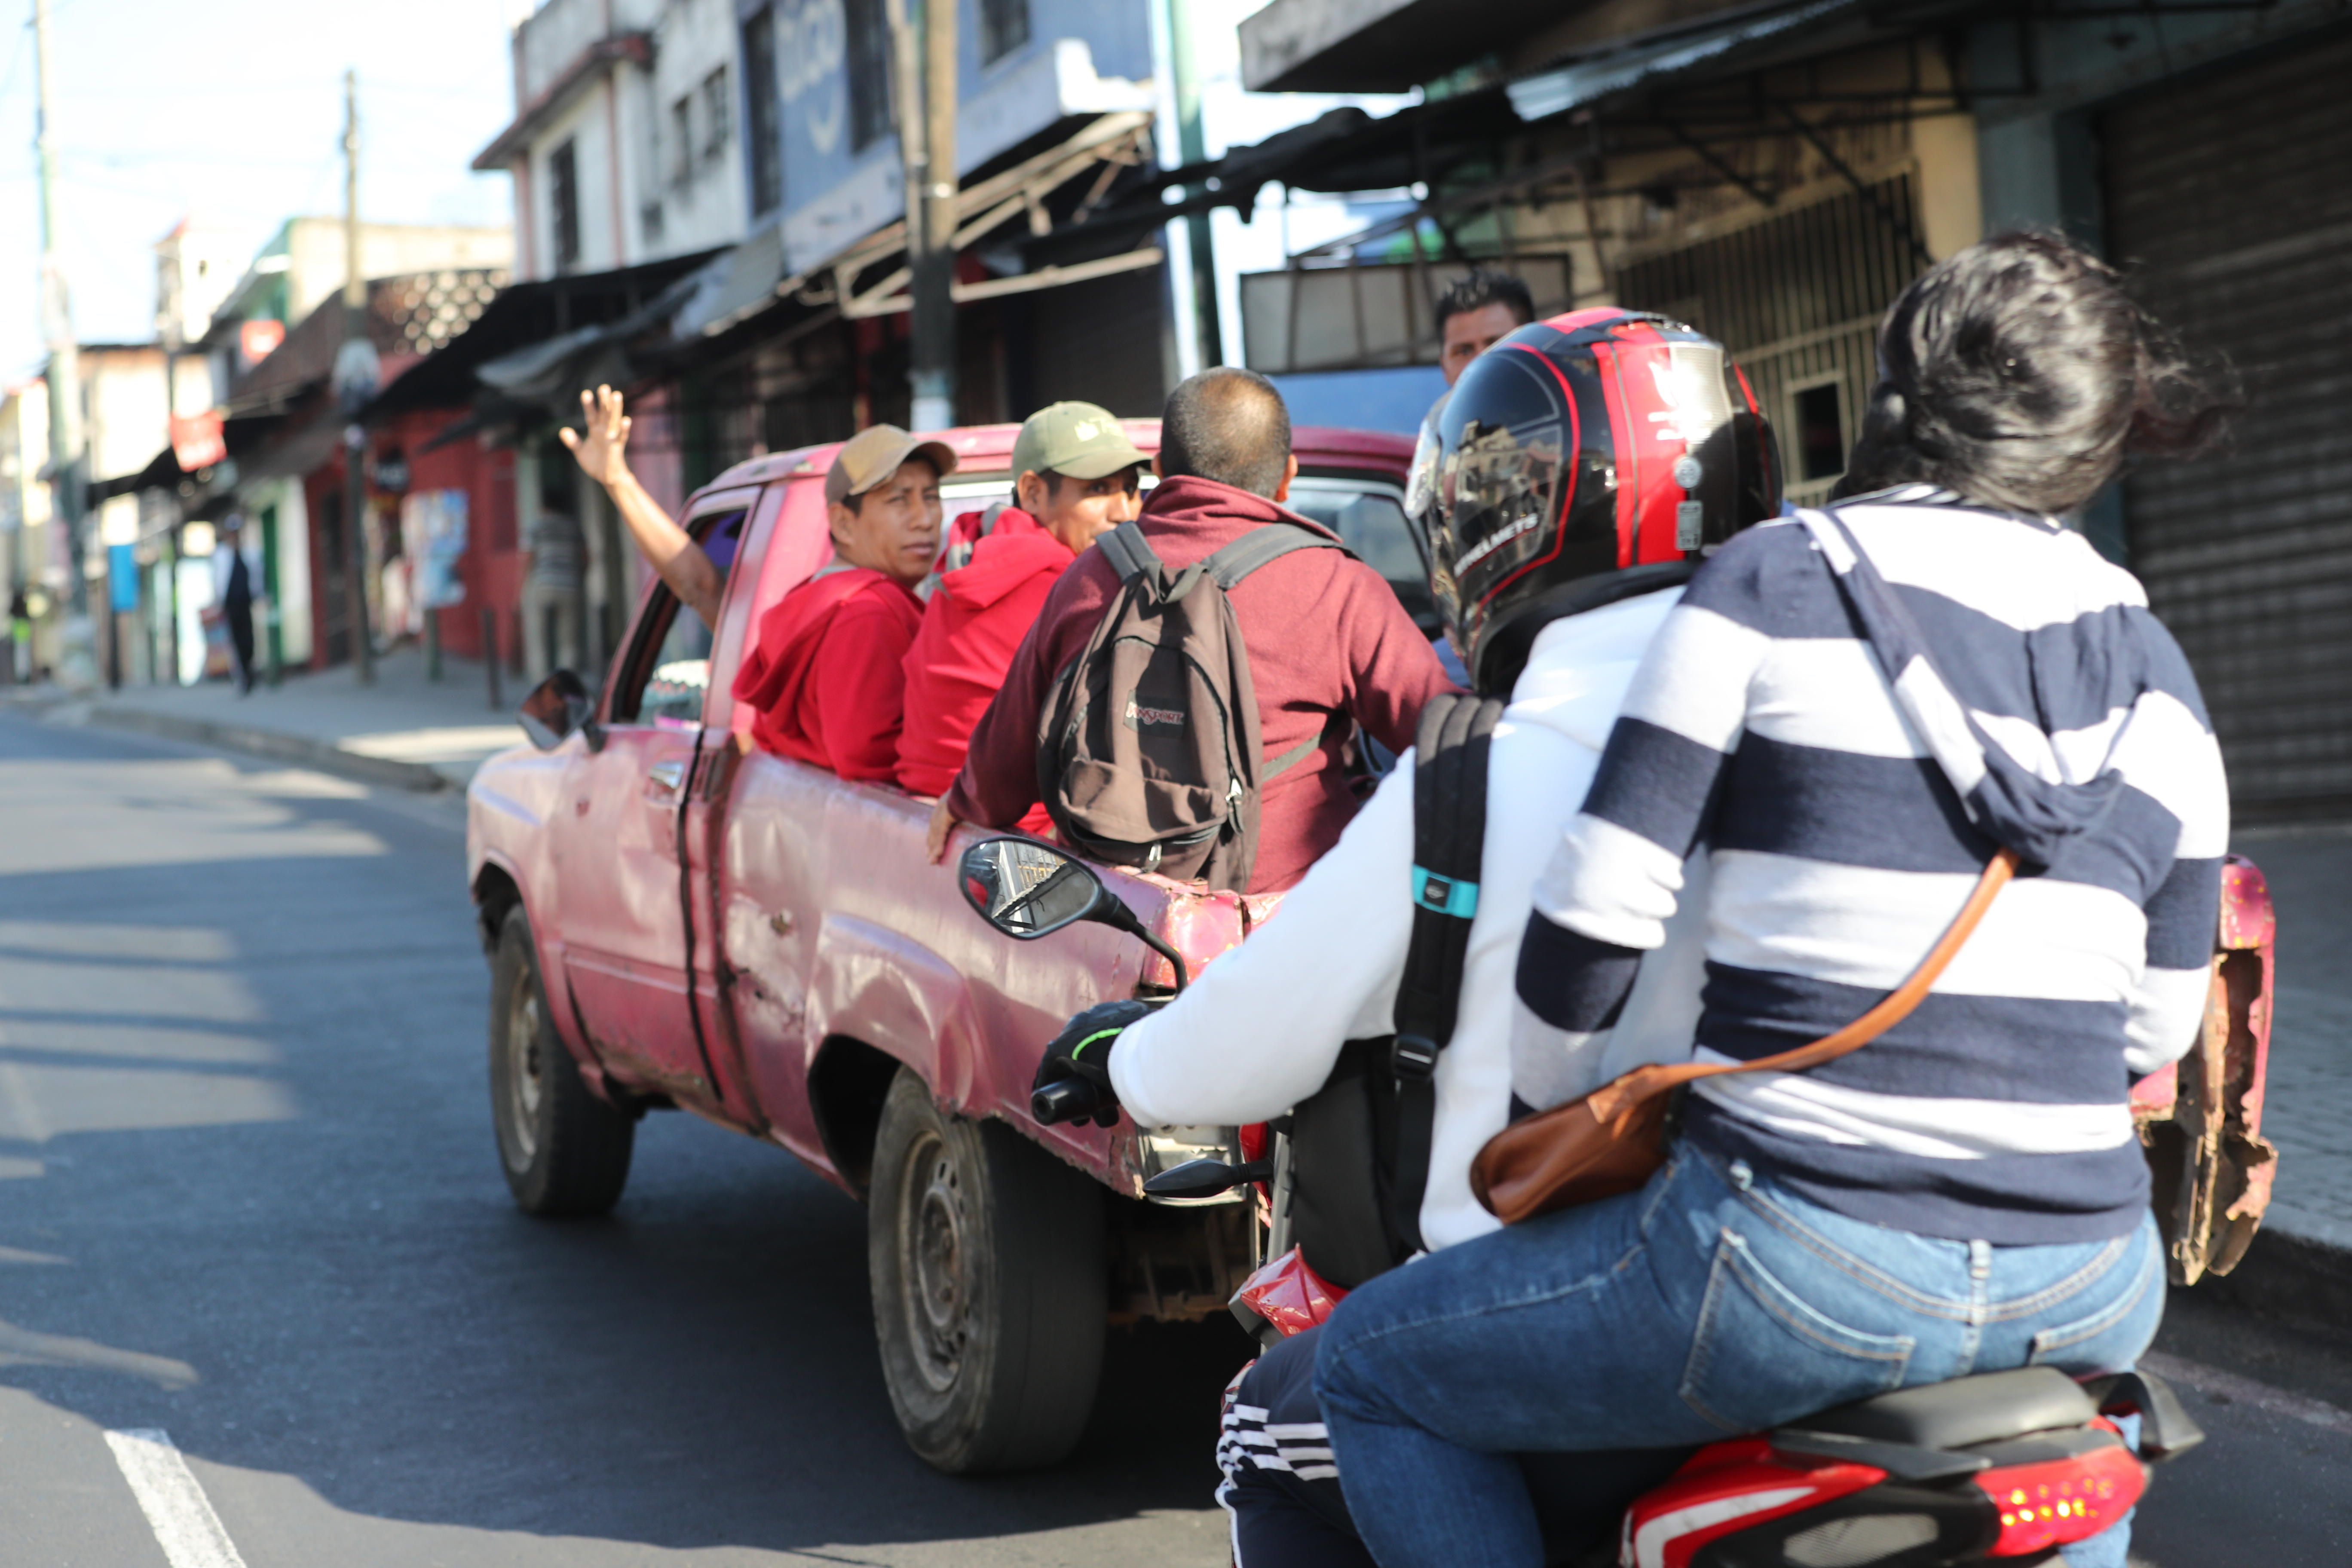 En sectores de Mixco se pudo observar a vehículos trasladando personas a un costo de entre Q5 y Q10. (Foto Prensa Libre: Erick Ávila)